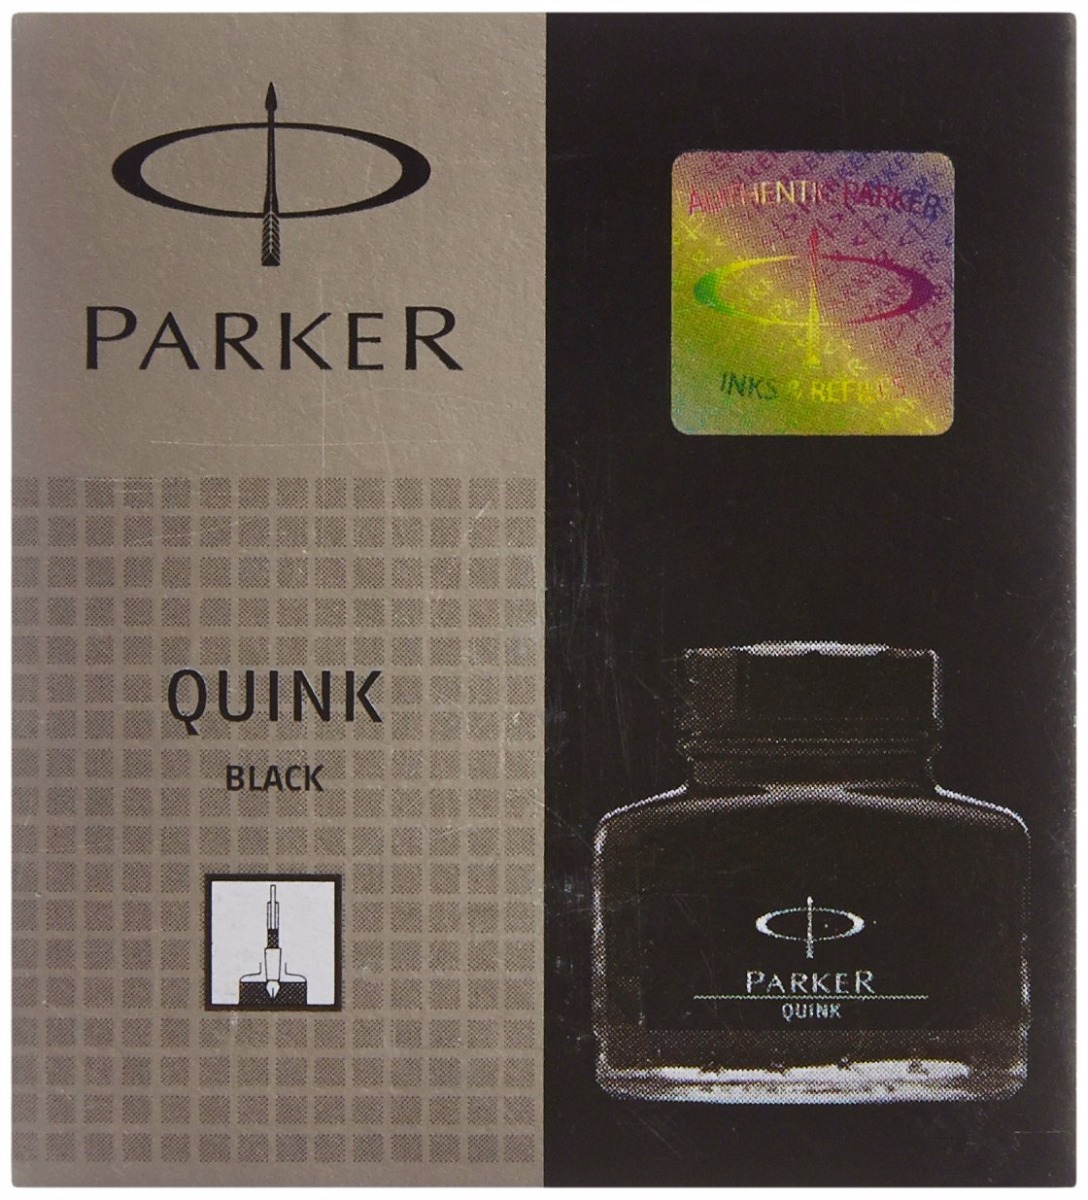 Parker Model: 70036 Parker quink Black 30 ml ink bottle